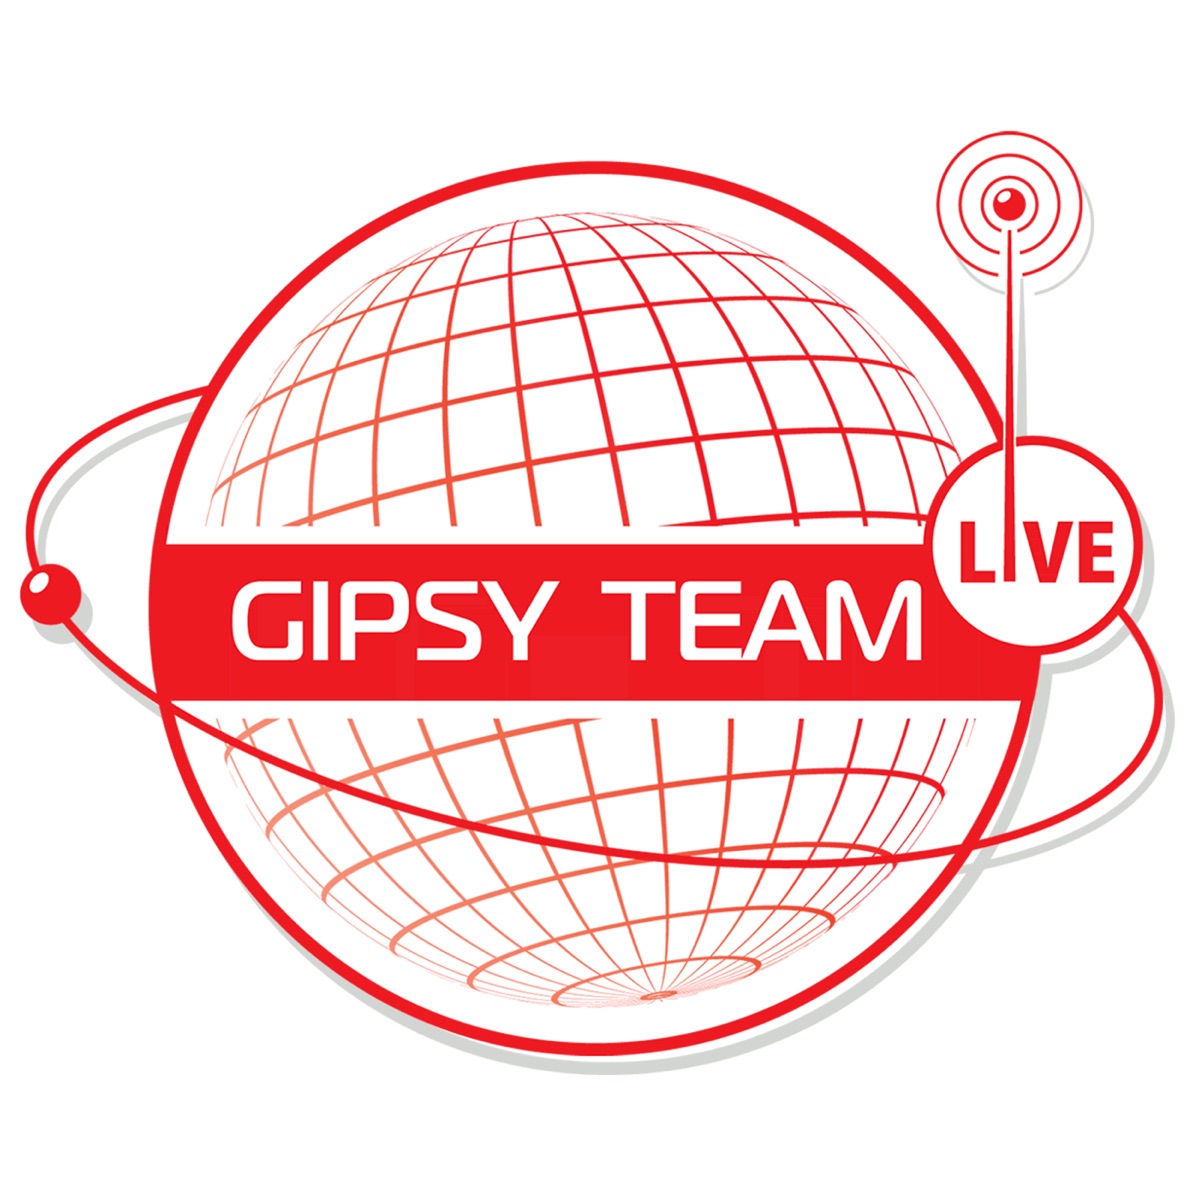 Gipsy team